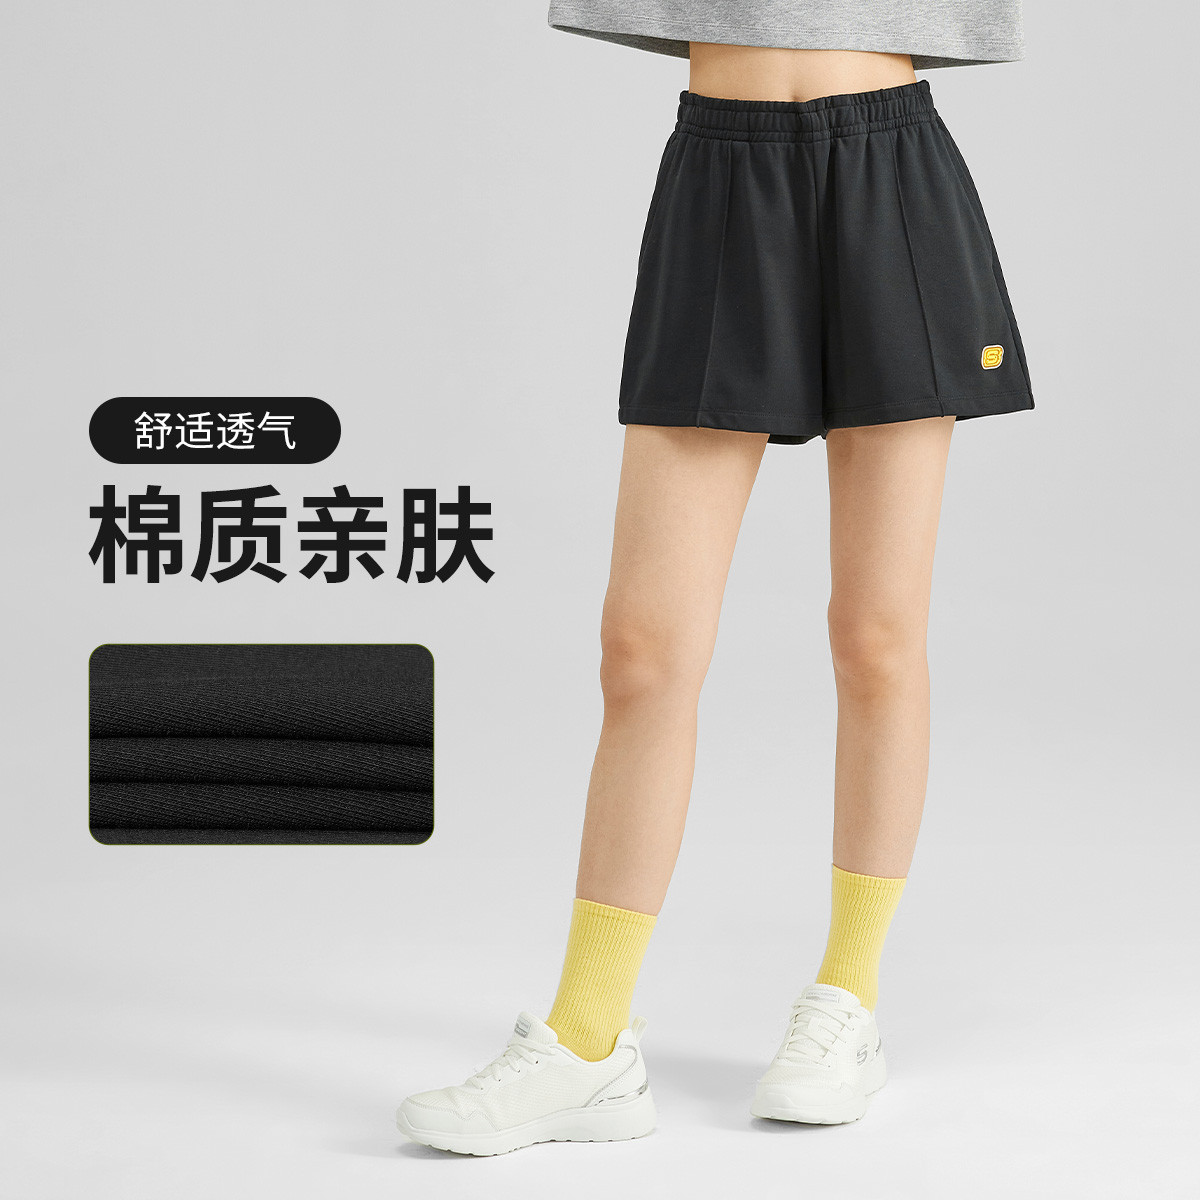 【时尚】短裤女时尚针织运动短裤女短裤薄款夏季